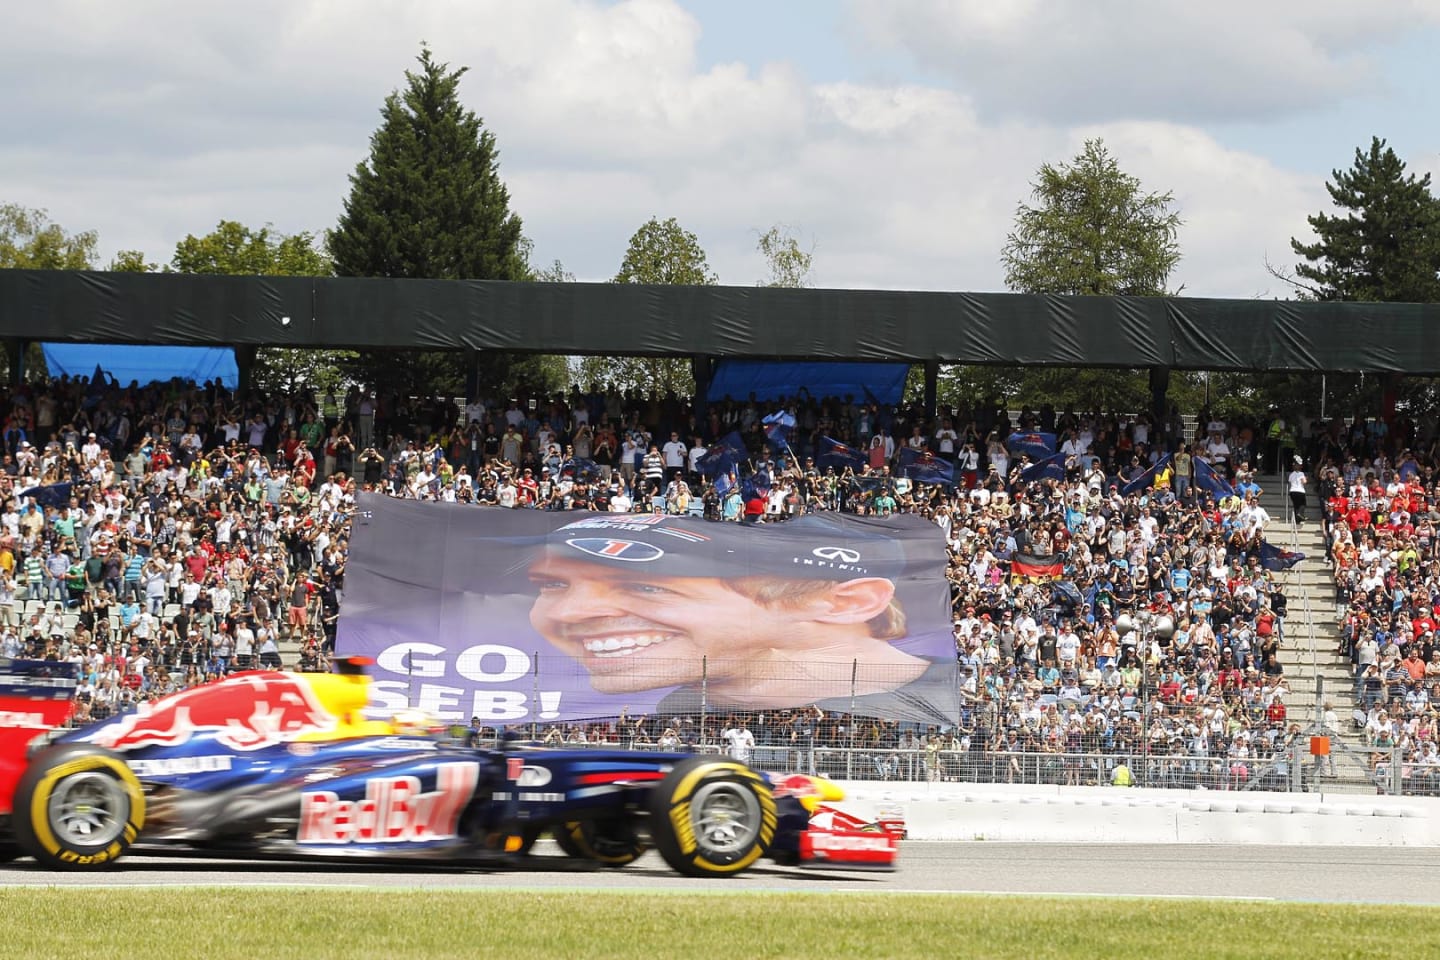 Hockenheimring, Hockenheim, Germany
22nd July 2012
Sebastian Vettel, Red Bull RB8 Renault, passes